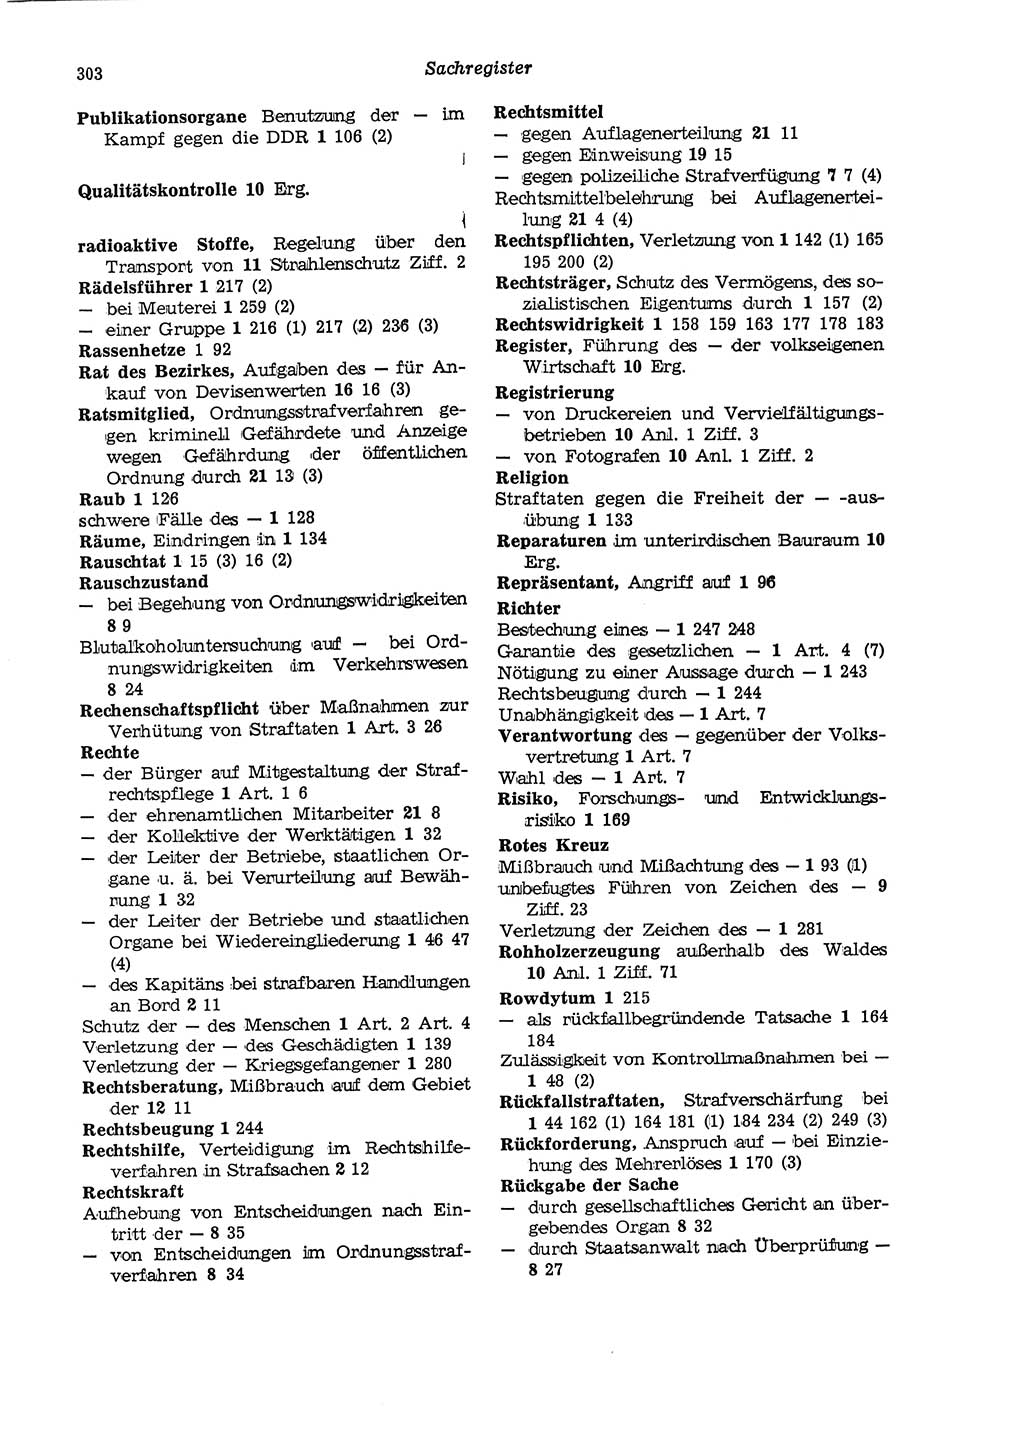 Strafgesetzbuch (StGB) der Deutschen Demokratischen Republik (DDR) und angrenzende Gesetze und Bestimmungen 1975, Seite 303 (StGB DDR Ges. Best. 1975, S. 303)